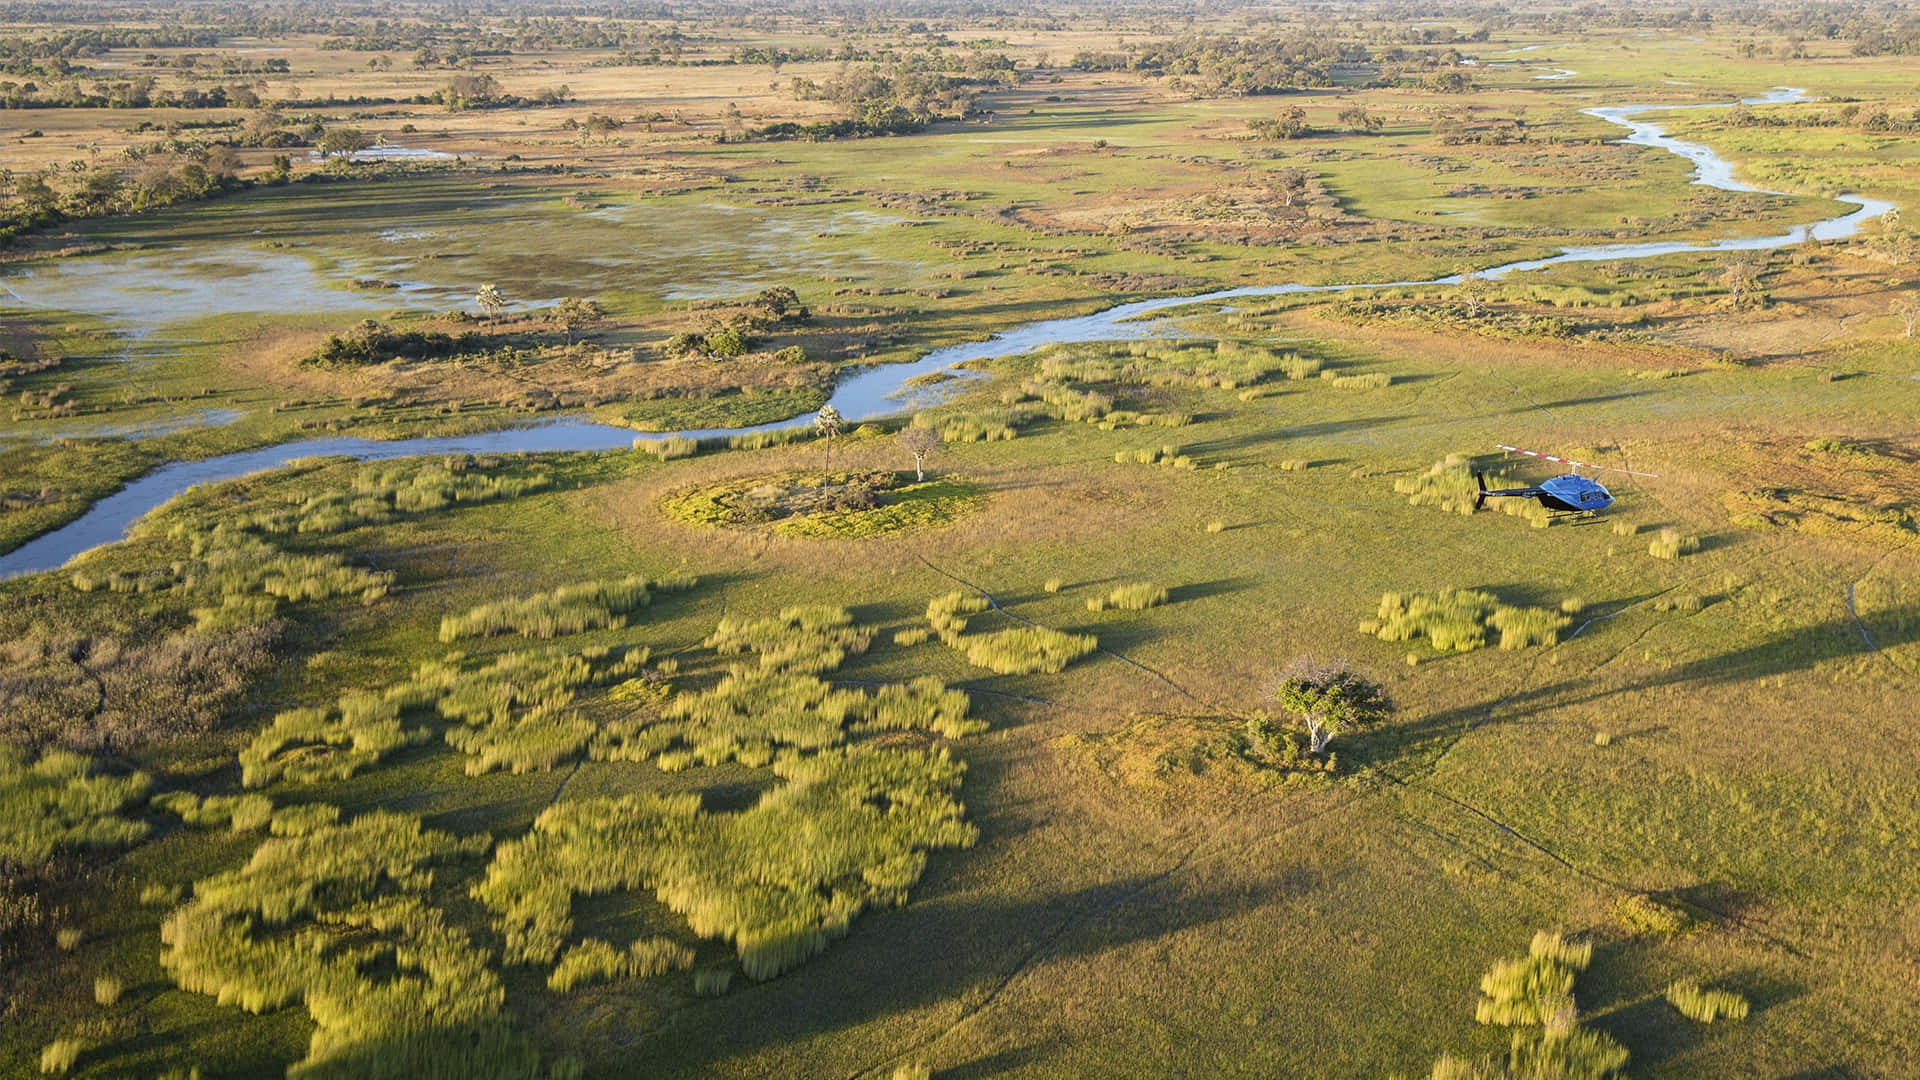 Okavango Delta 1920 X 1080 Wallpaper